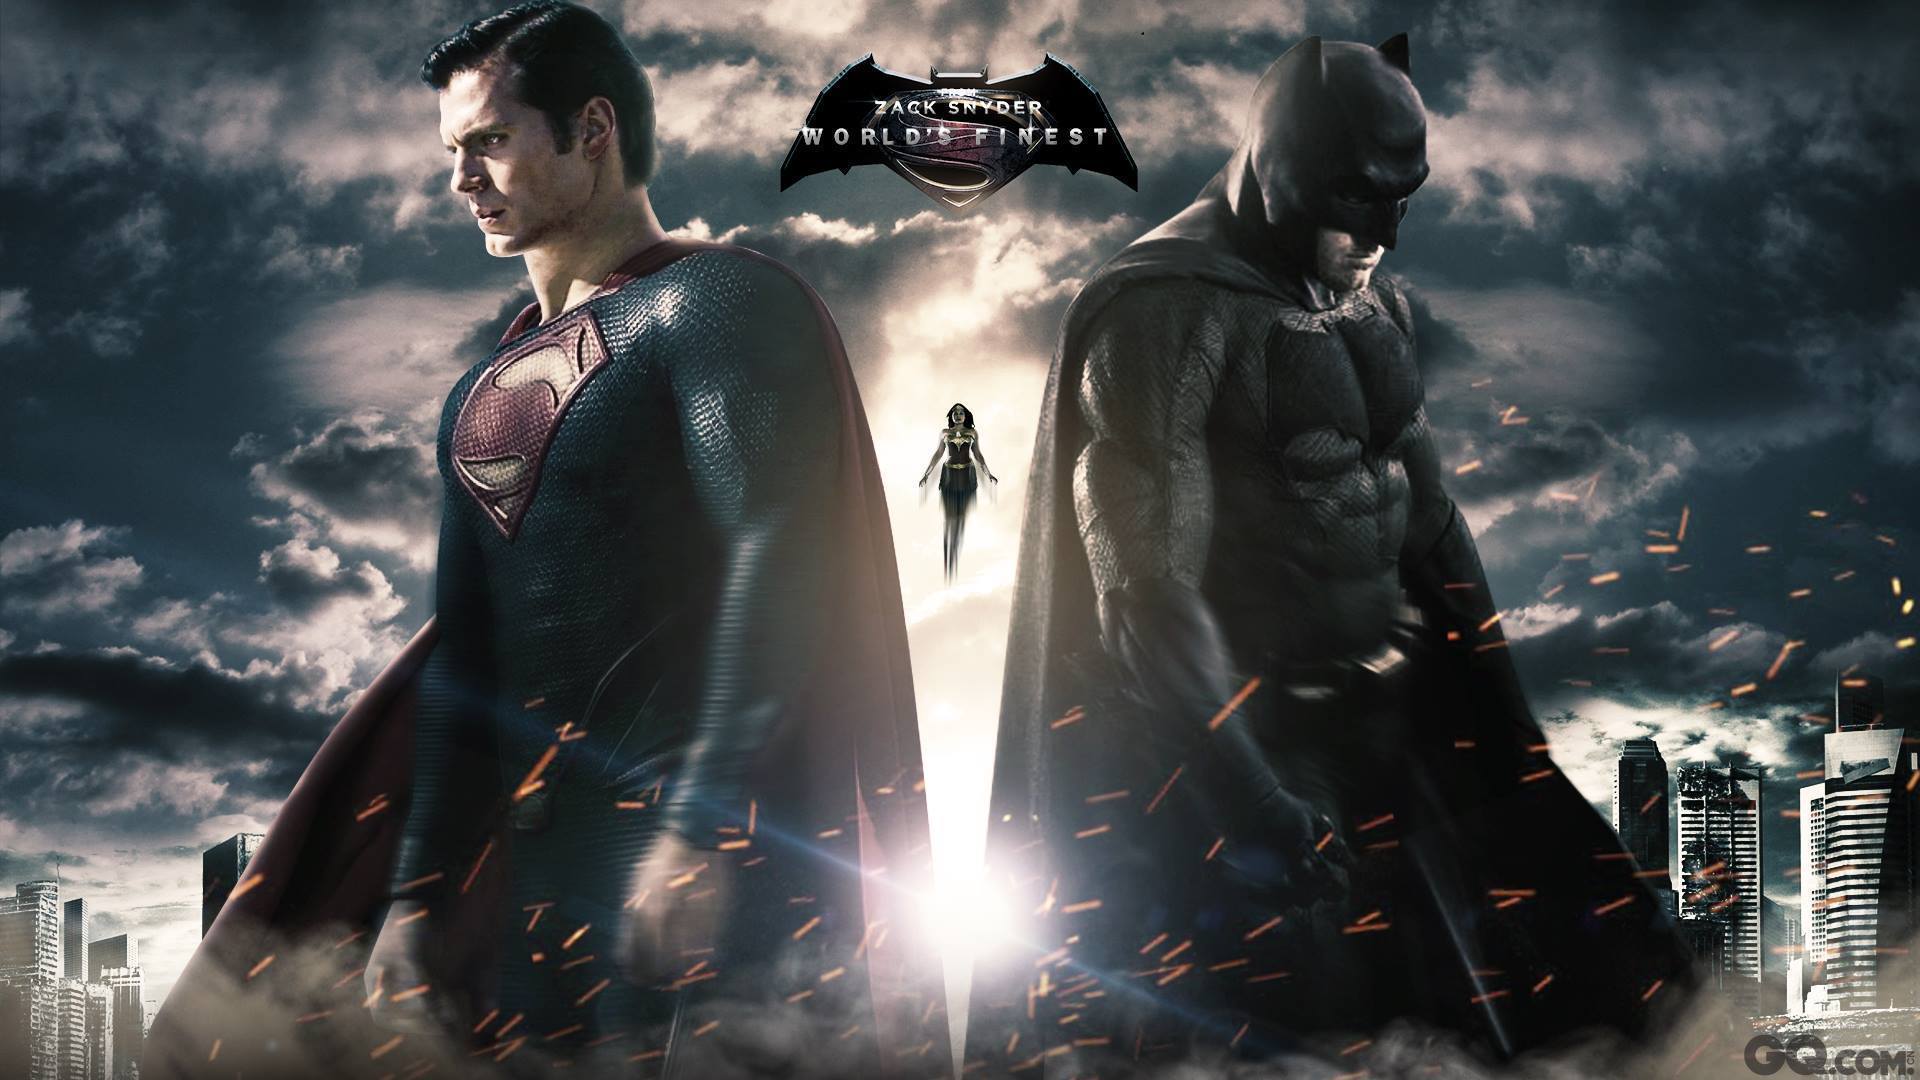 《蝙蝠侠大战超人：正义黎明》是由美国华纳兄弟影业公司出品，DC扩展宇宙超级英雄科幻动作片，也是2016年最受期待的大片之一。作为该部影片的唯一中国区形象代言人，即观战大使，无疑是对李易峰国内外影响力的肯定和信任。